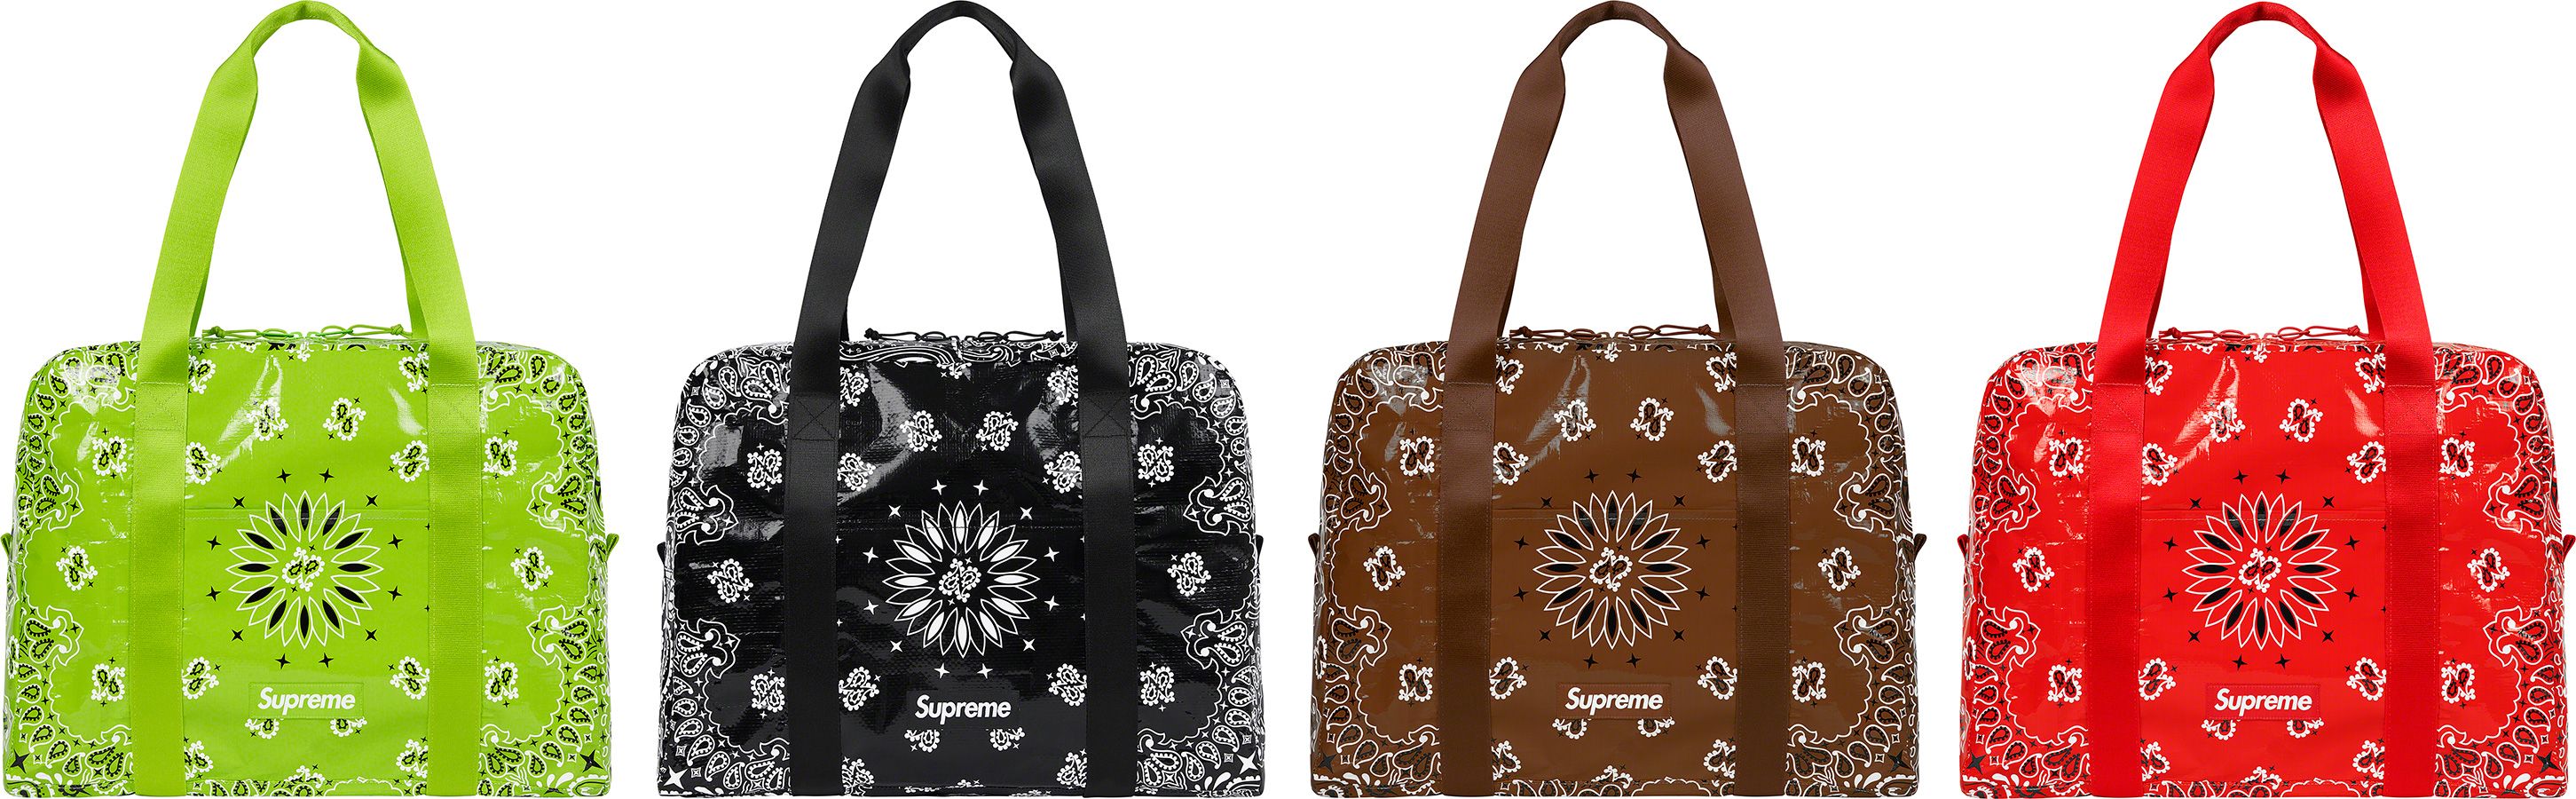 【新品限定SALE】Supreme Bandana Tarp Duffle Bag Large 50 バッグ